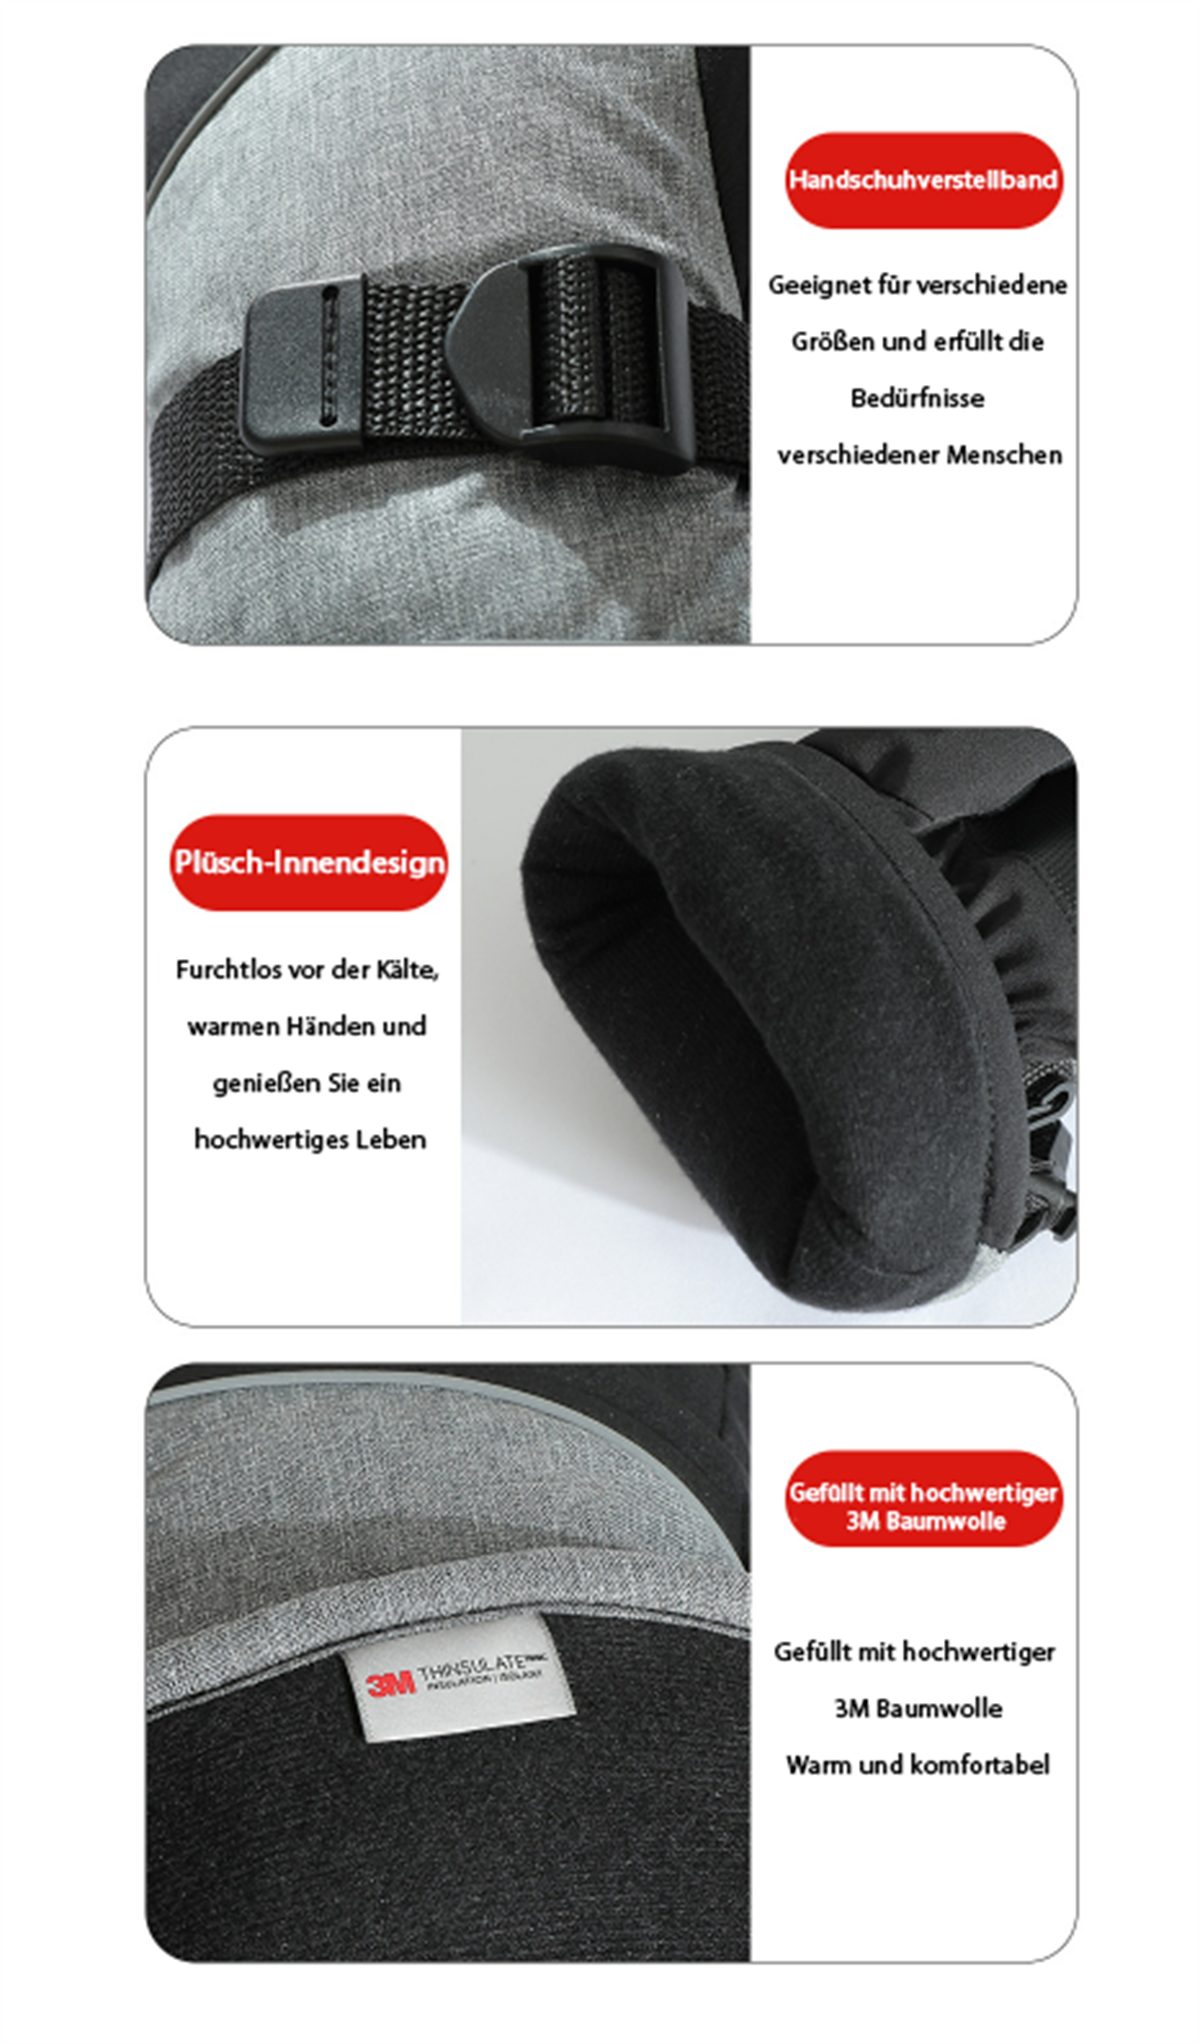 wasserdichte +5000 und mAh Außenbereich Smart-Heizhandschuhe Handschuhe Warme carefully Winter-Arbeitshandschuhe graue und den für Schwarze selected